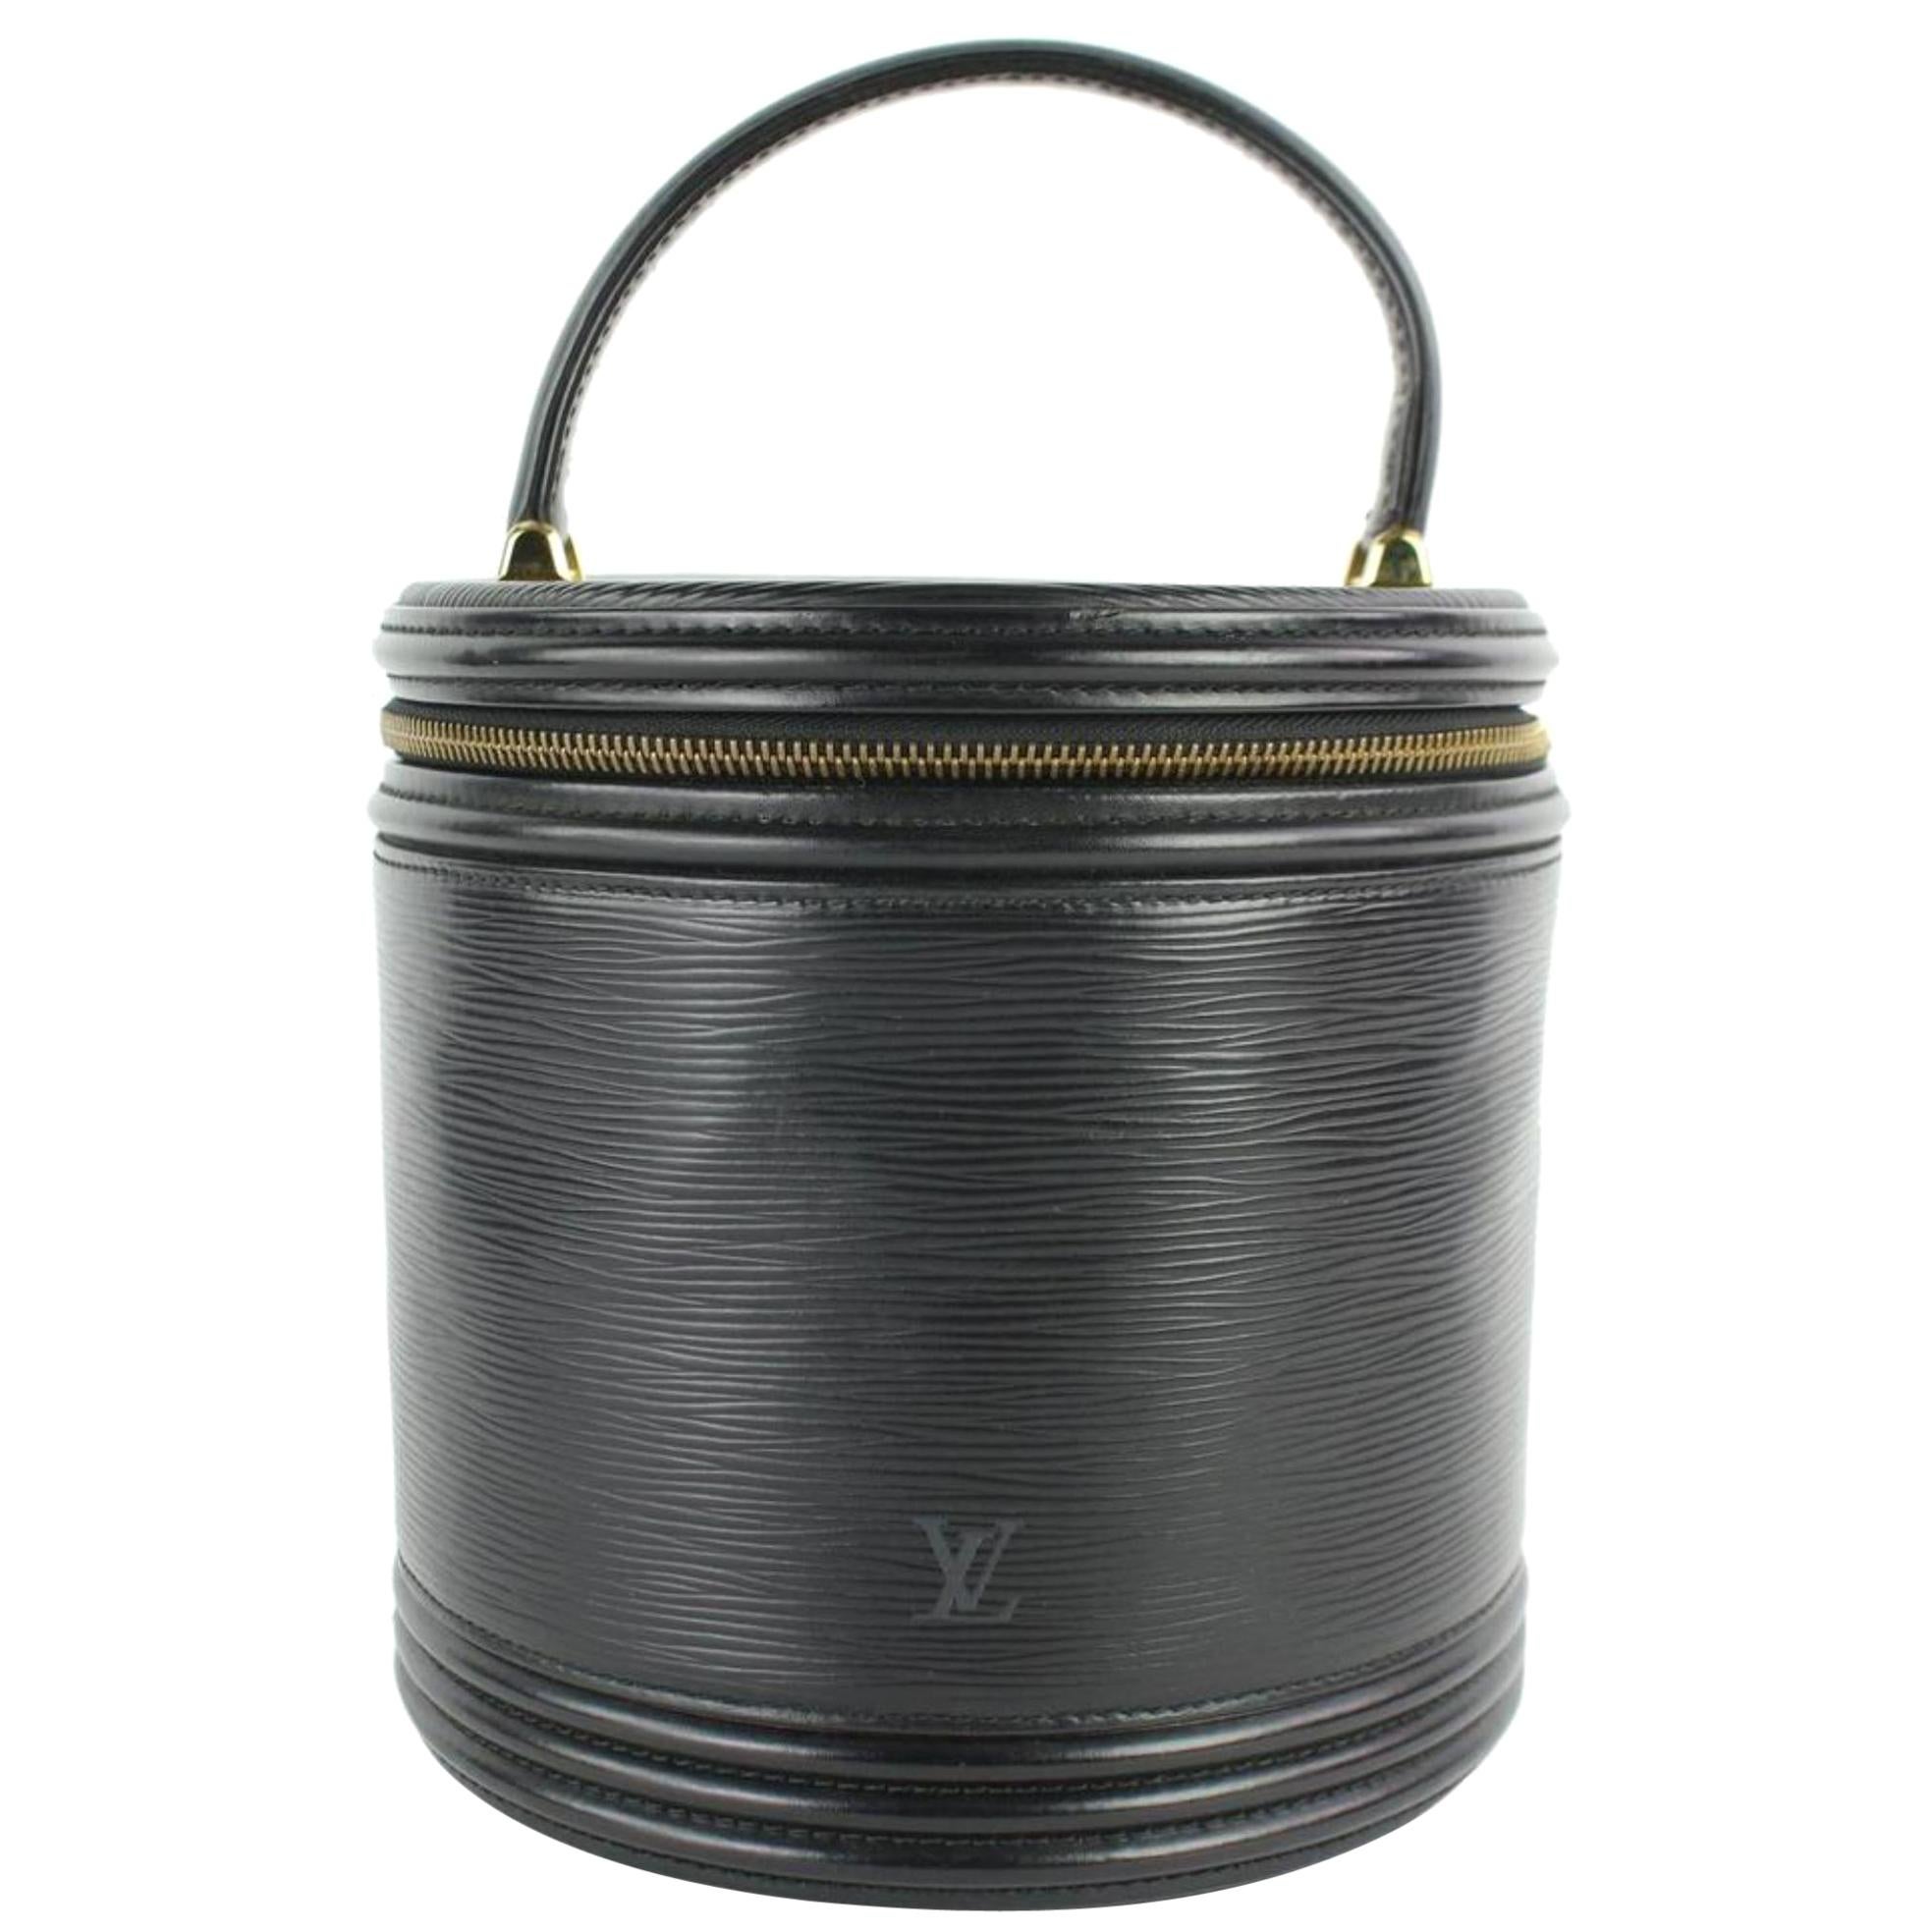 Louis Vuitton Cannes Noir Vanity Tote Case 27lz0129 Black Leather Satchel For Sale